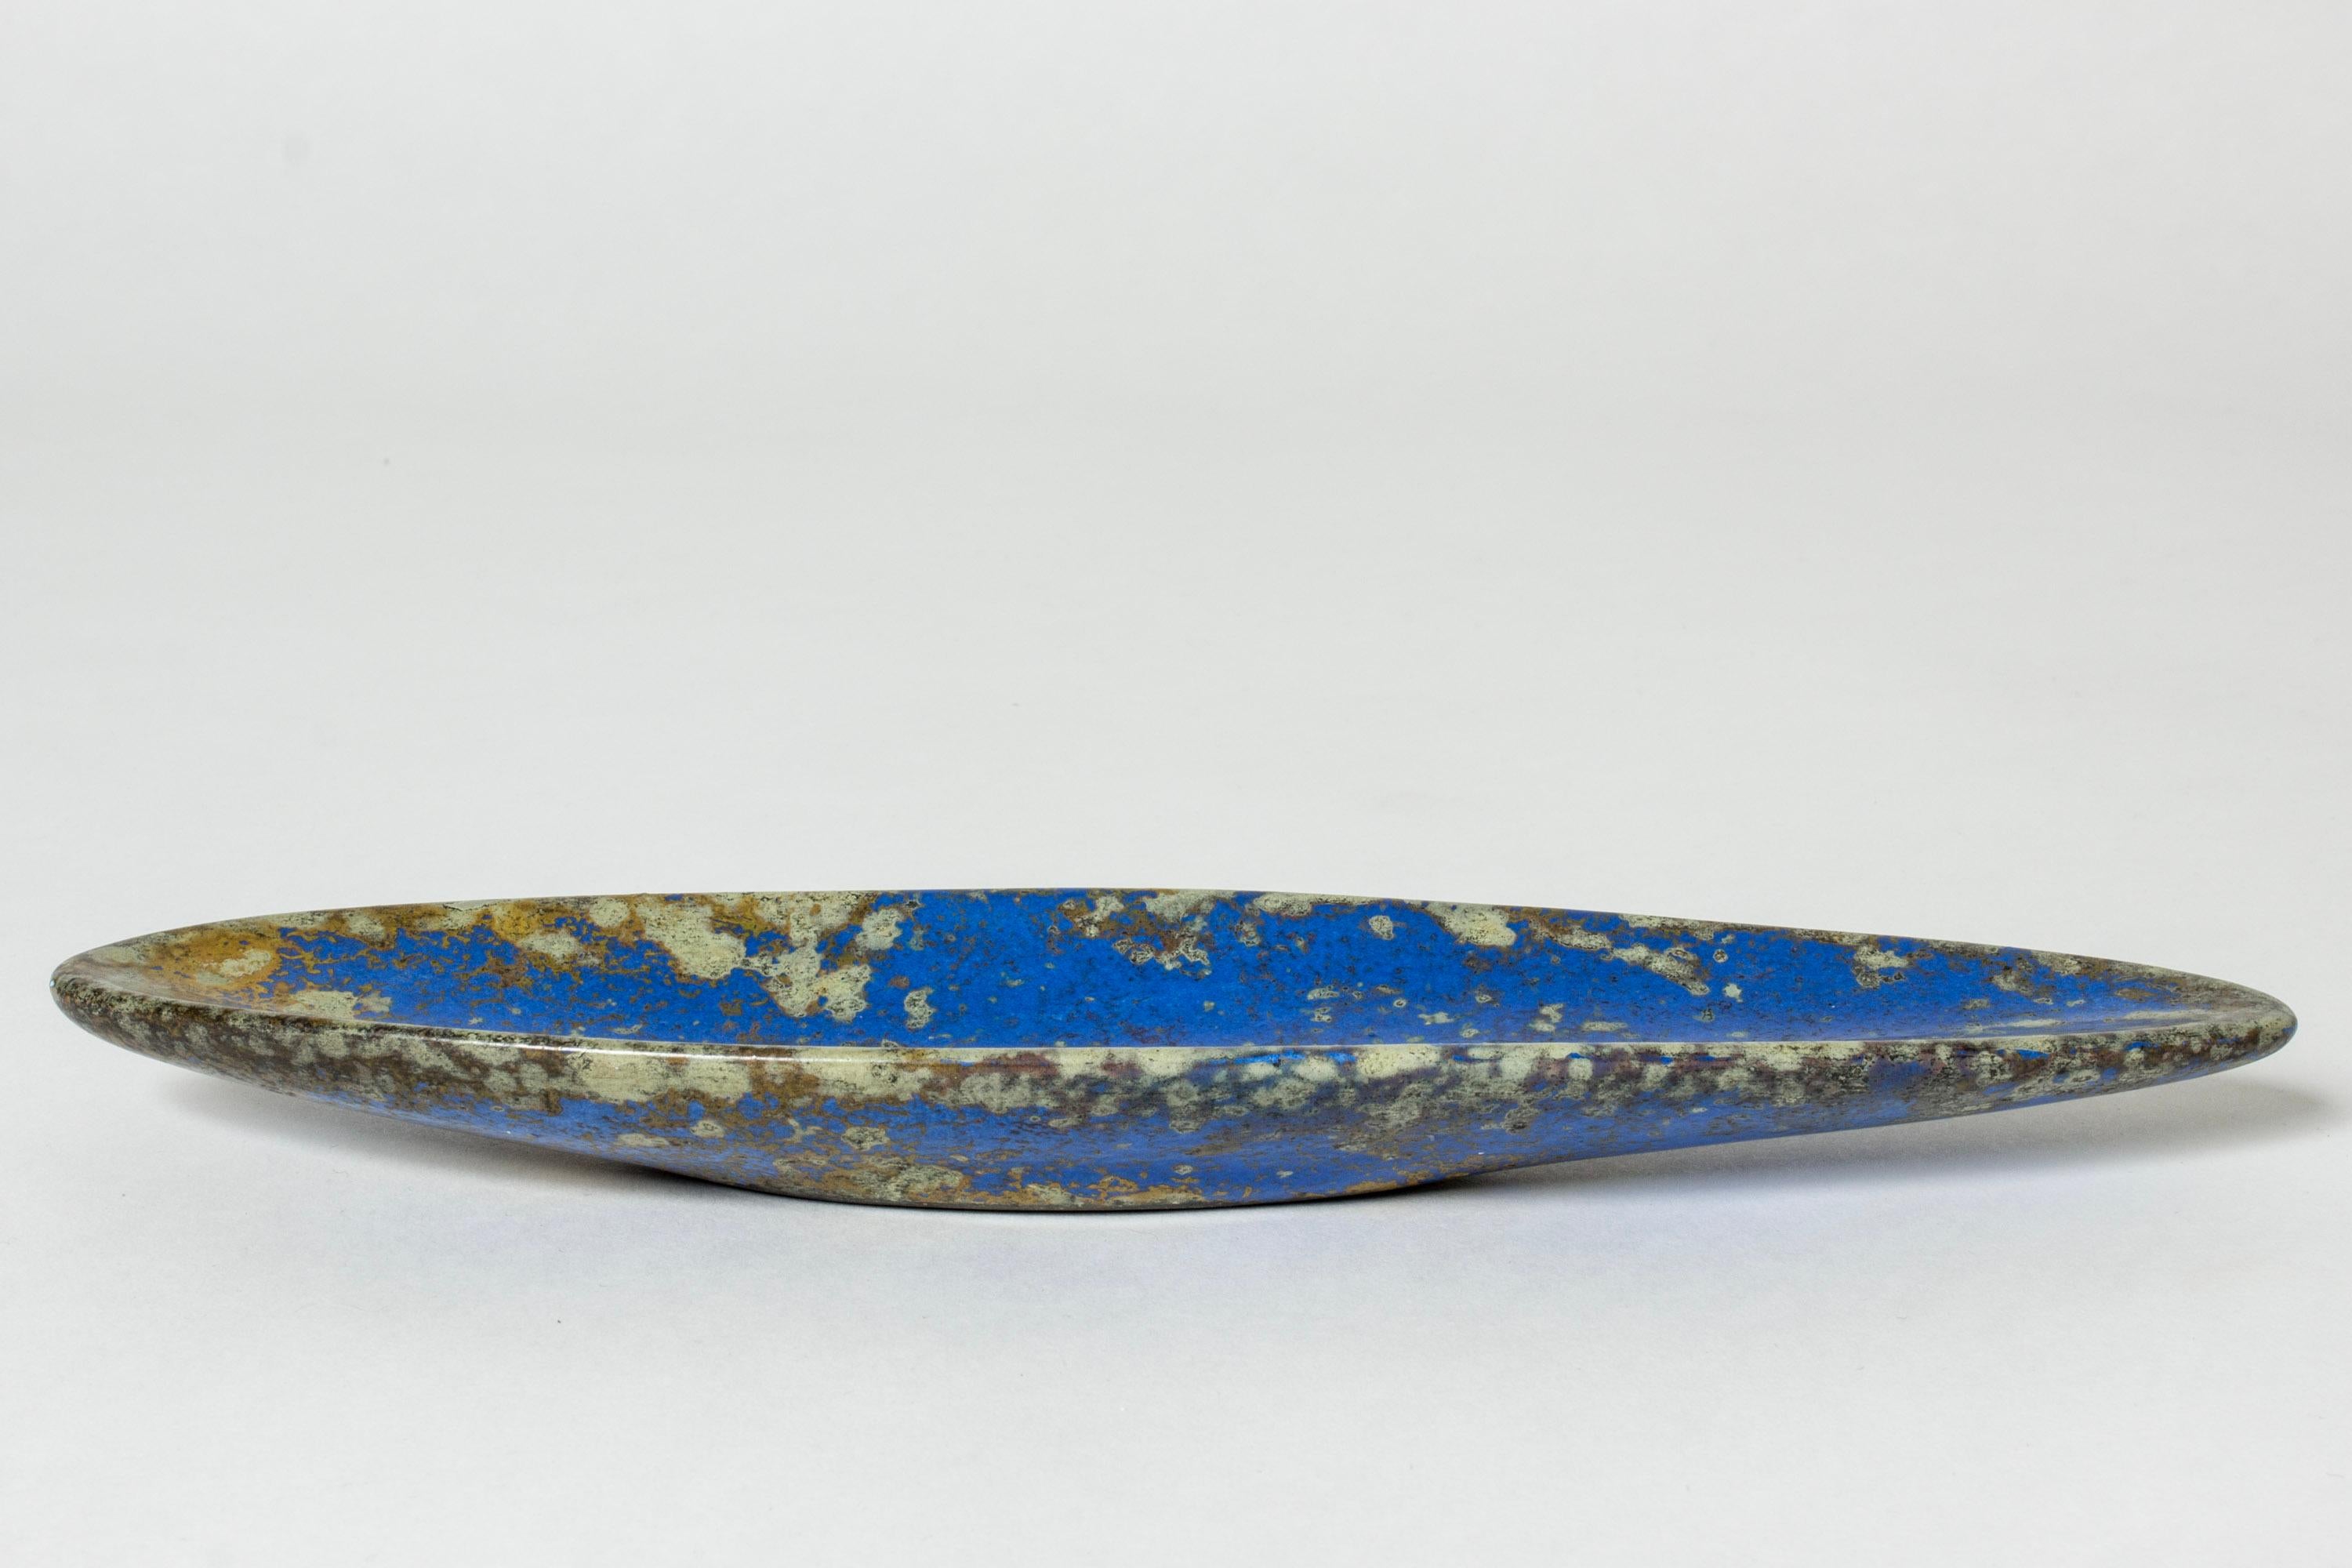 Schöner kleiner Teller von Hans Hedberg, aus Fayence. Mandelförmig mit auffallend blauer Glasur, die mit litschenartigen Flecken bedeckt ist.